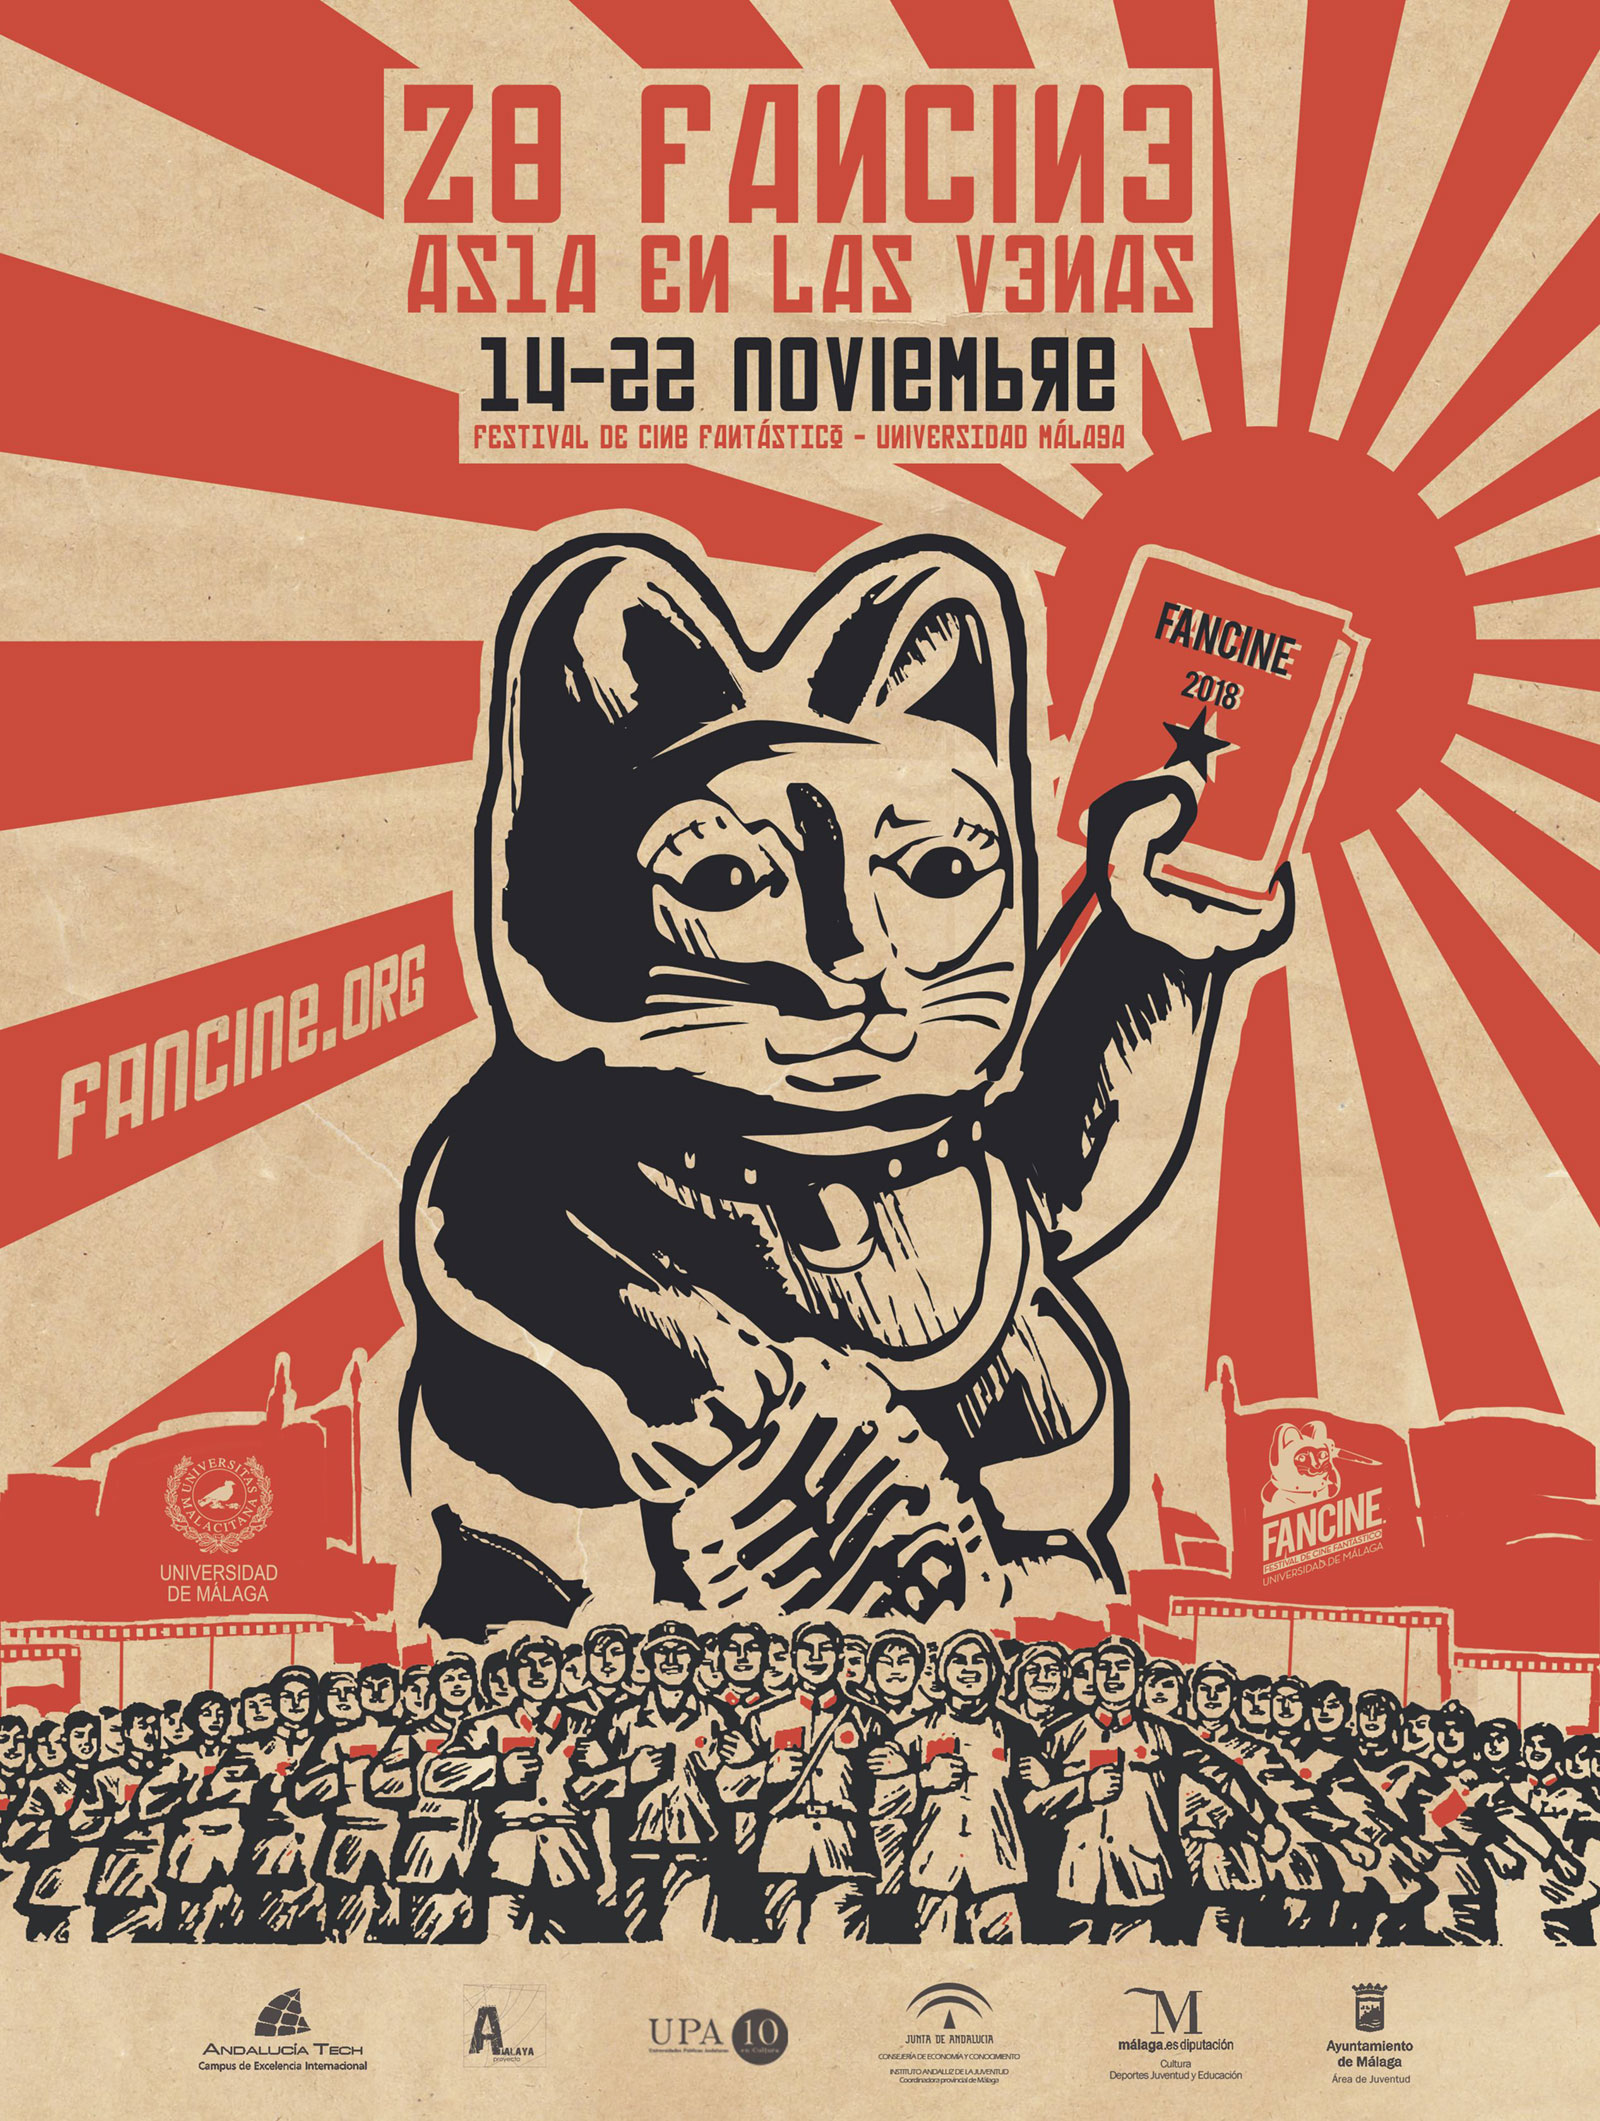 Poster for the 2008 Fancine film festival